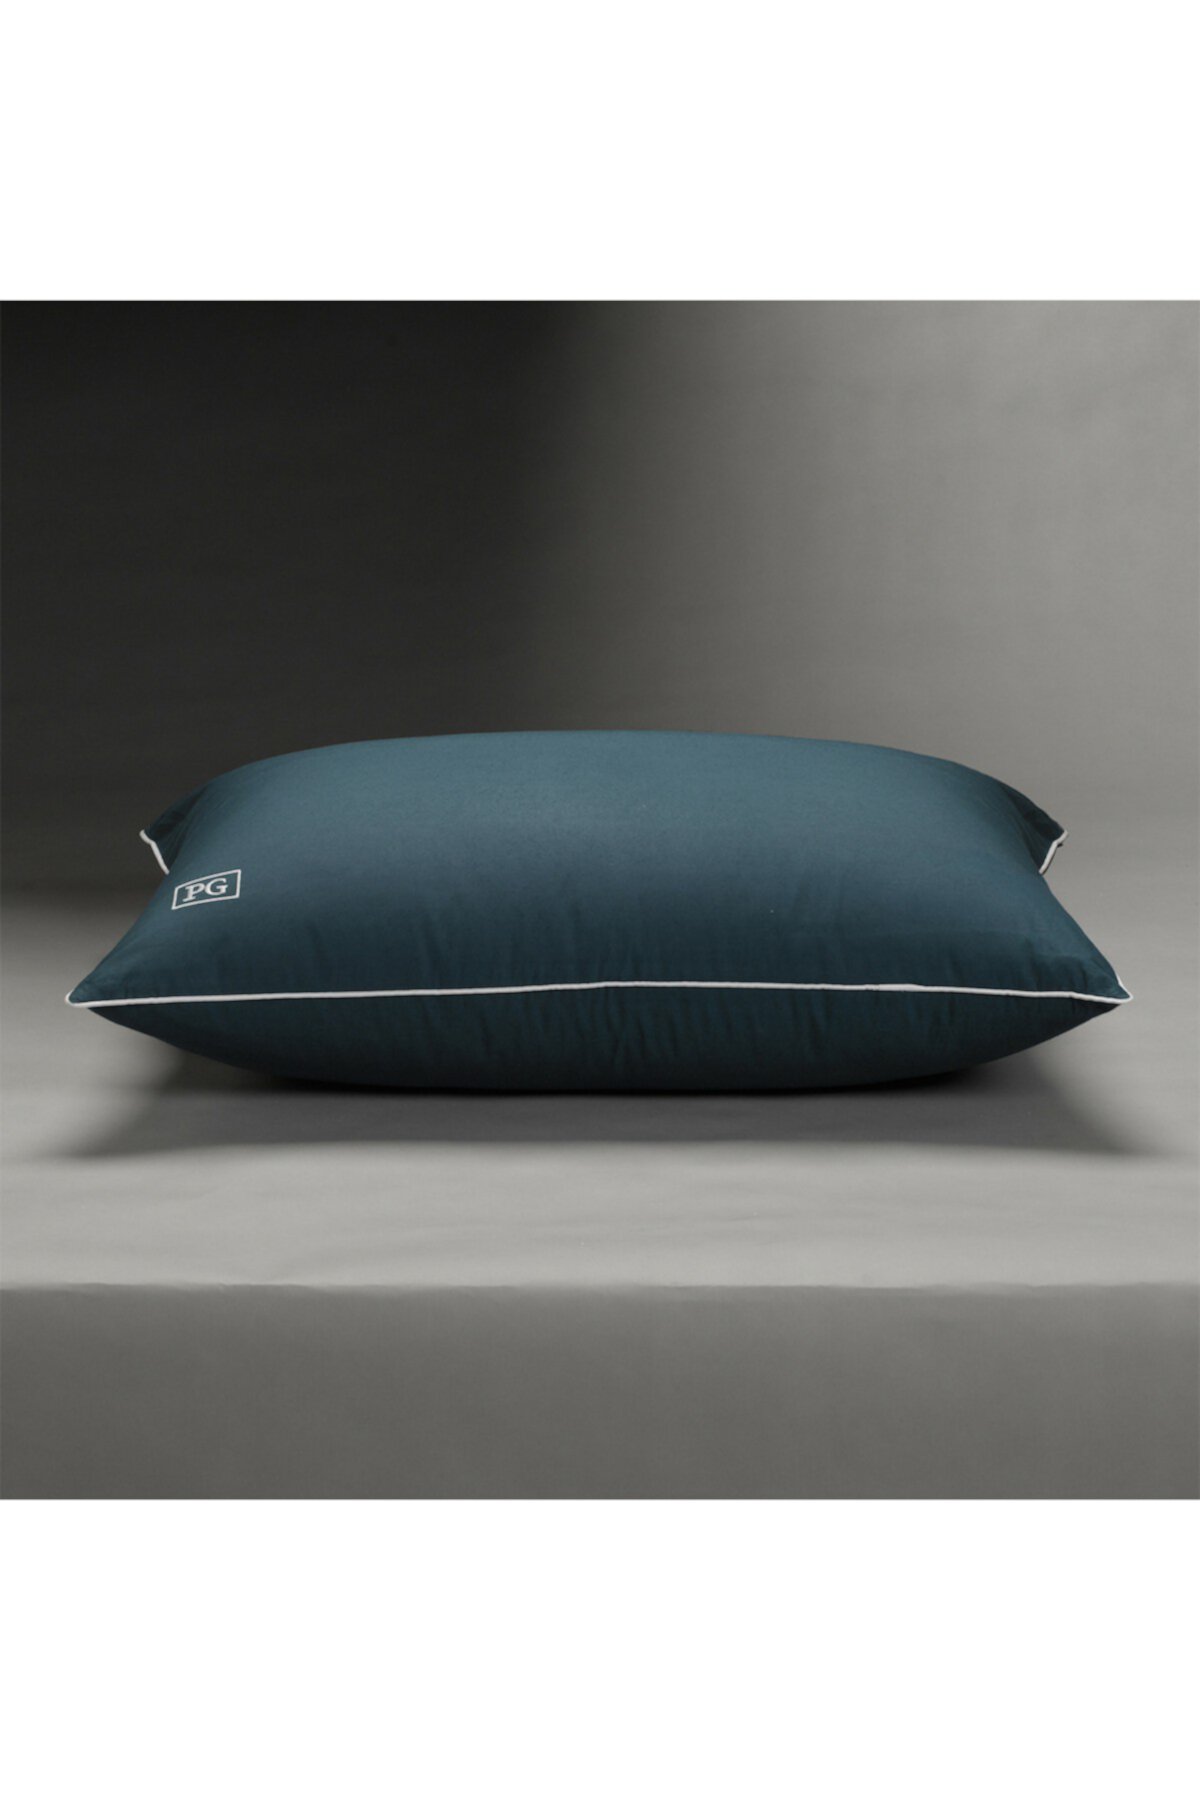 Мягкая подушка для пухового спящего желудка с технологией MicronOne - King Size Pillow Guy